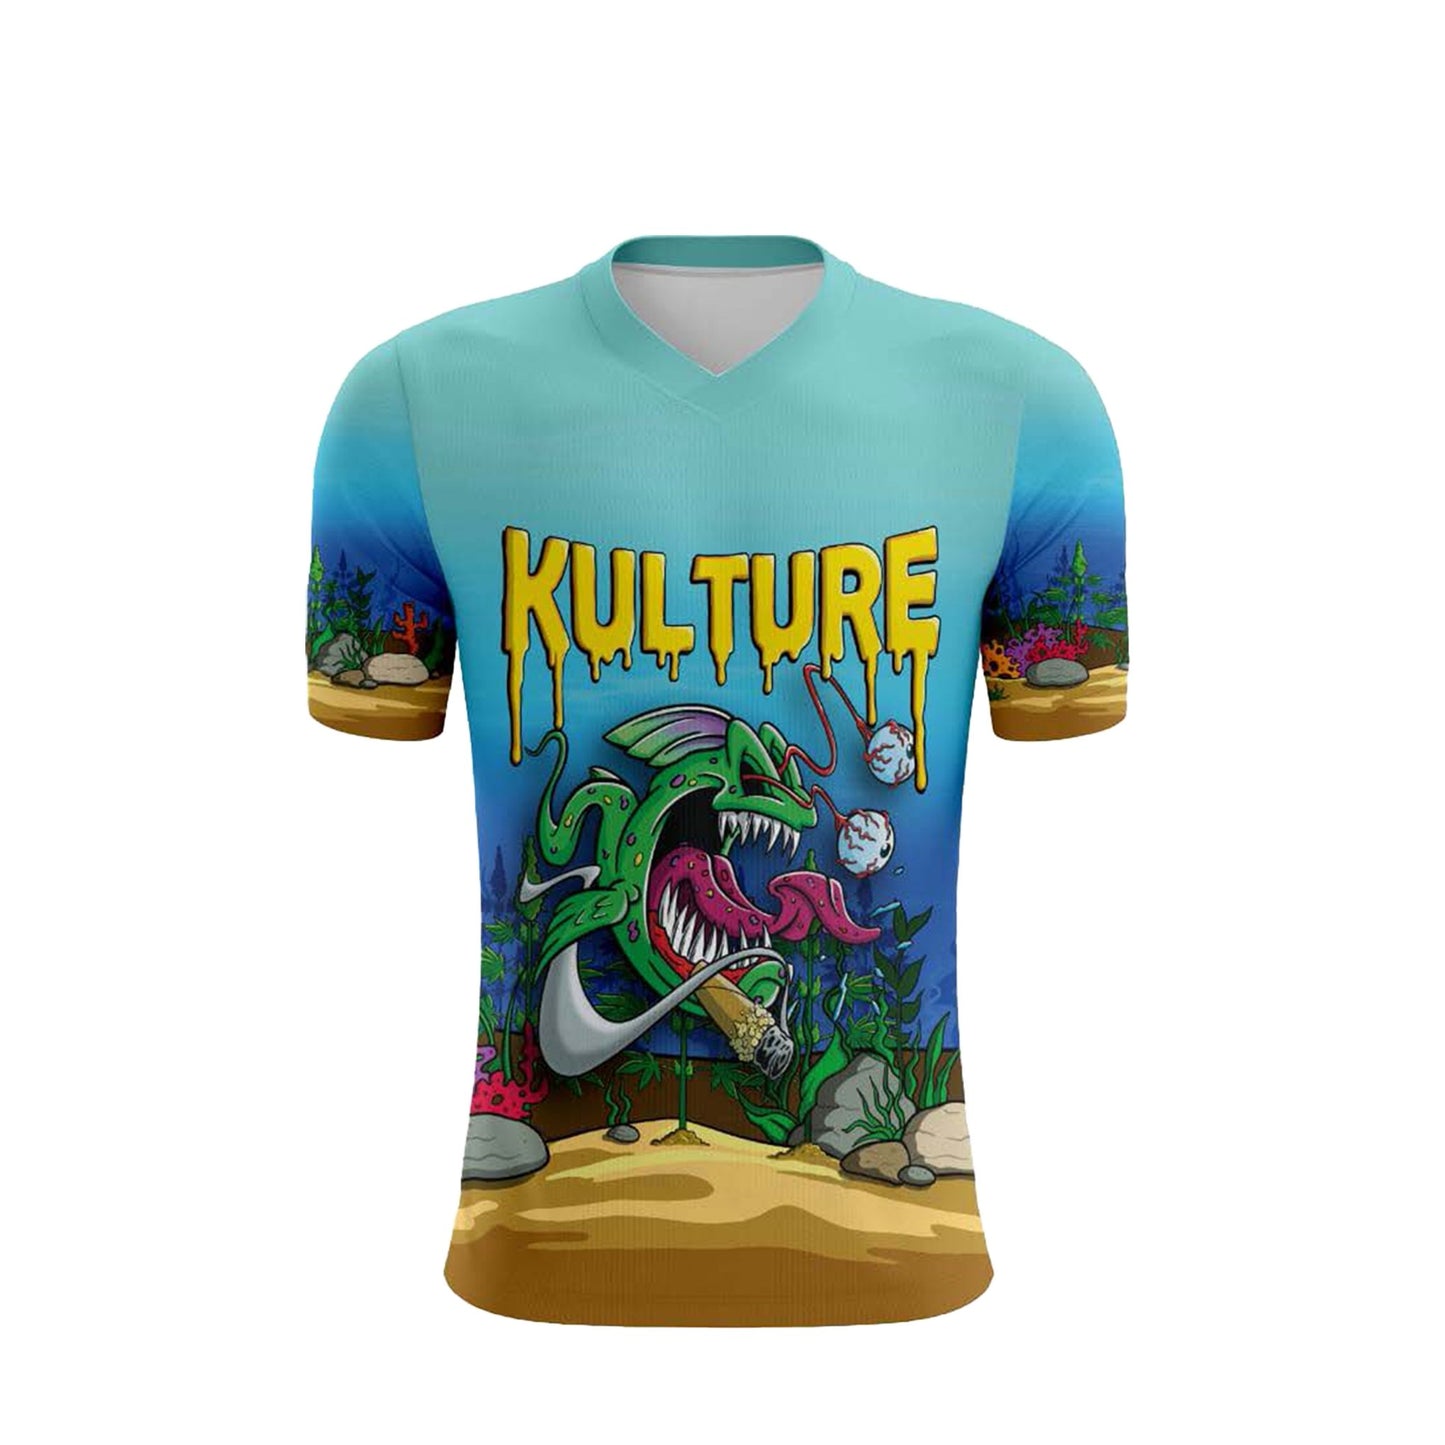 Phatty Piranha Dye Sublimation V-Neck Shirt - Kulture Klothing Club -